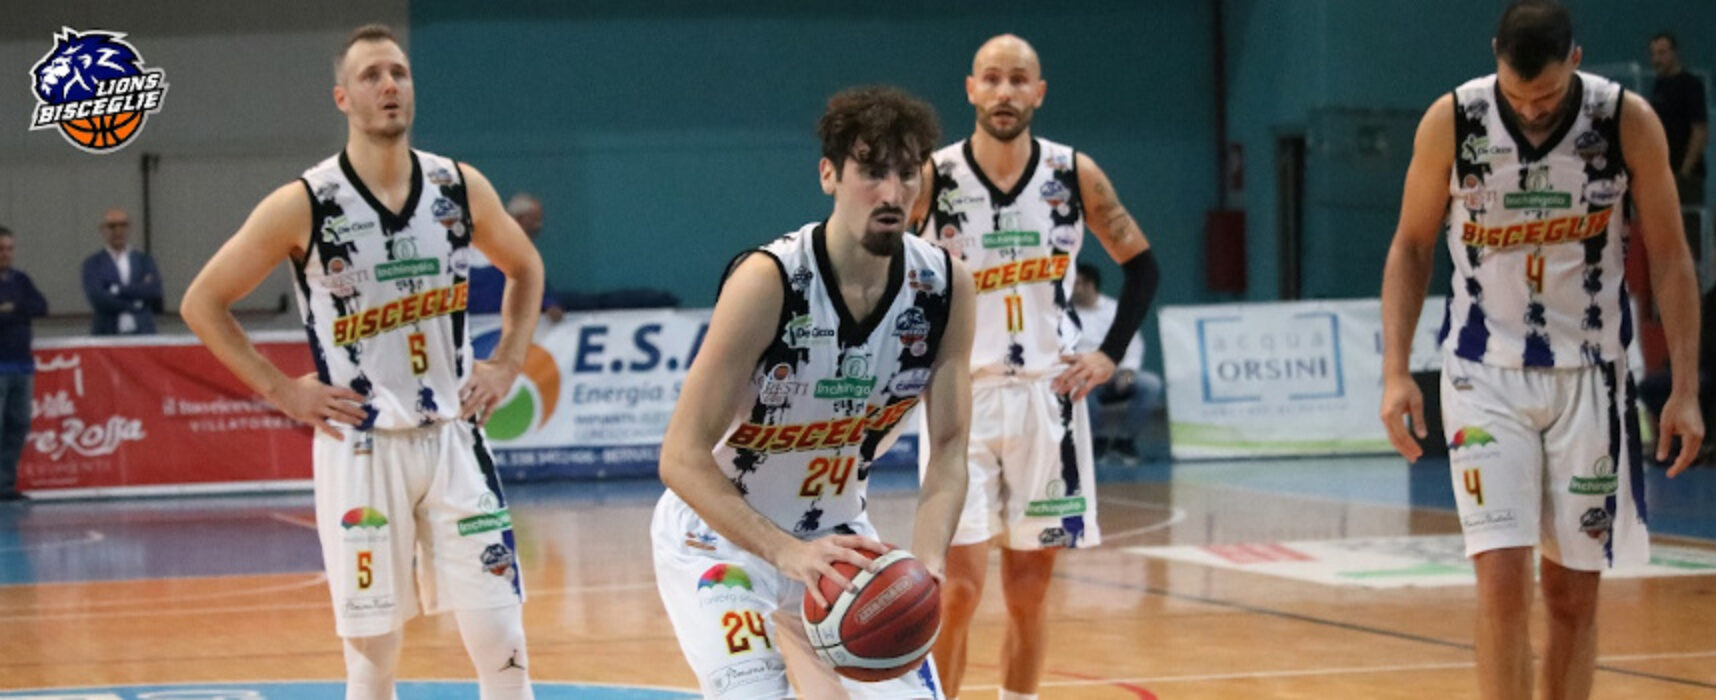 Basket, Lions Bisceglie alla ricerca della quinta affermazione in campionato a Cassino